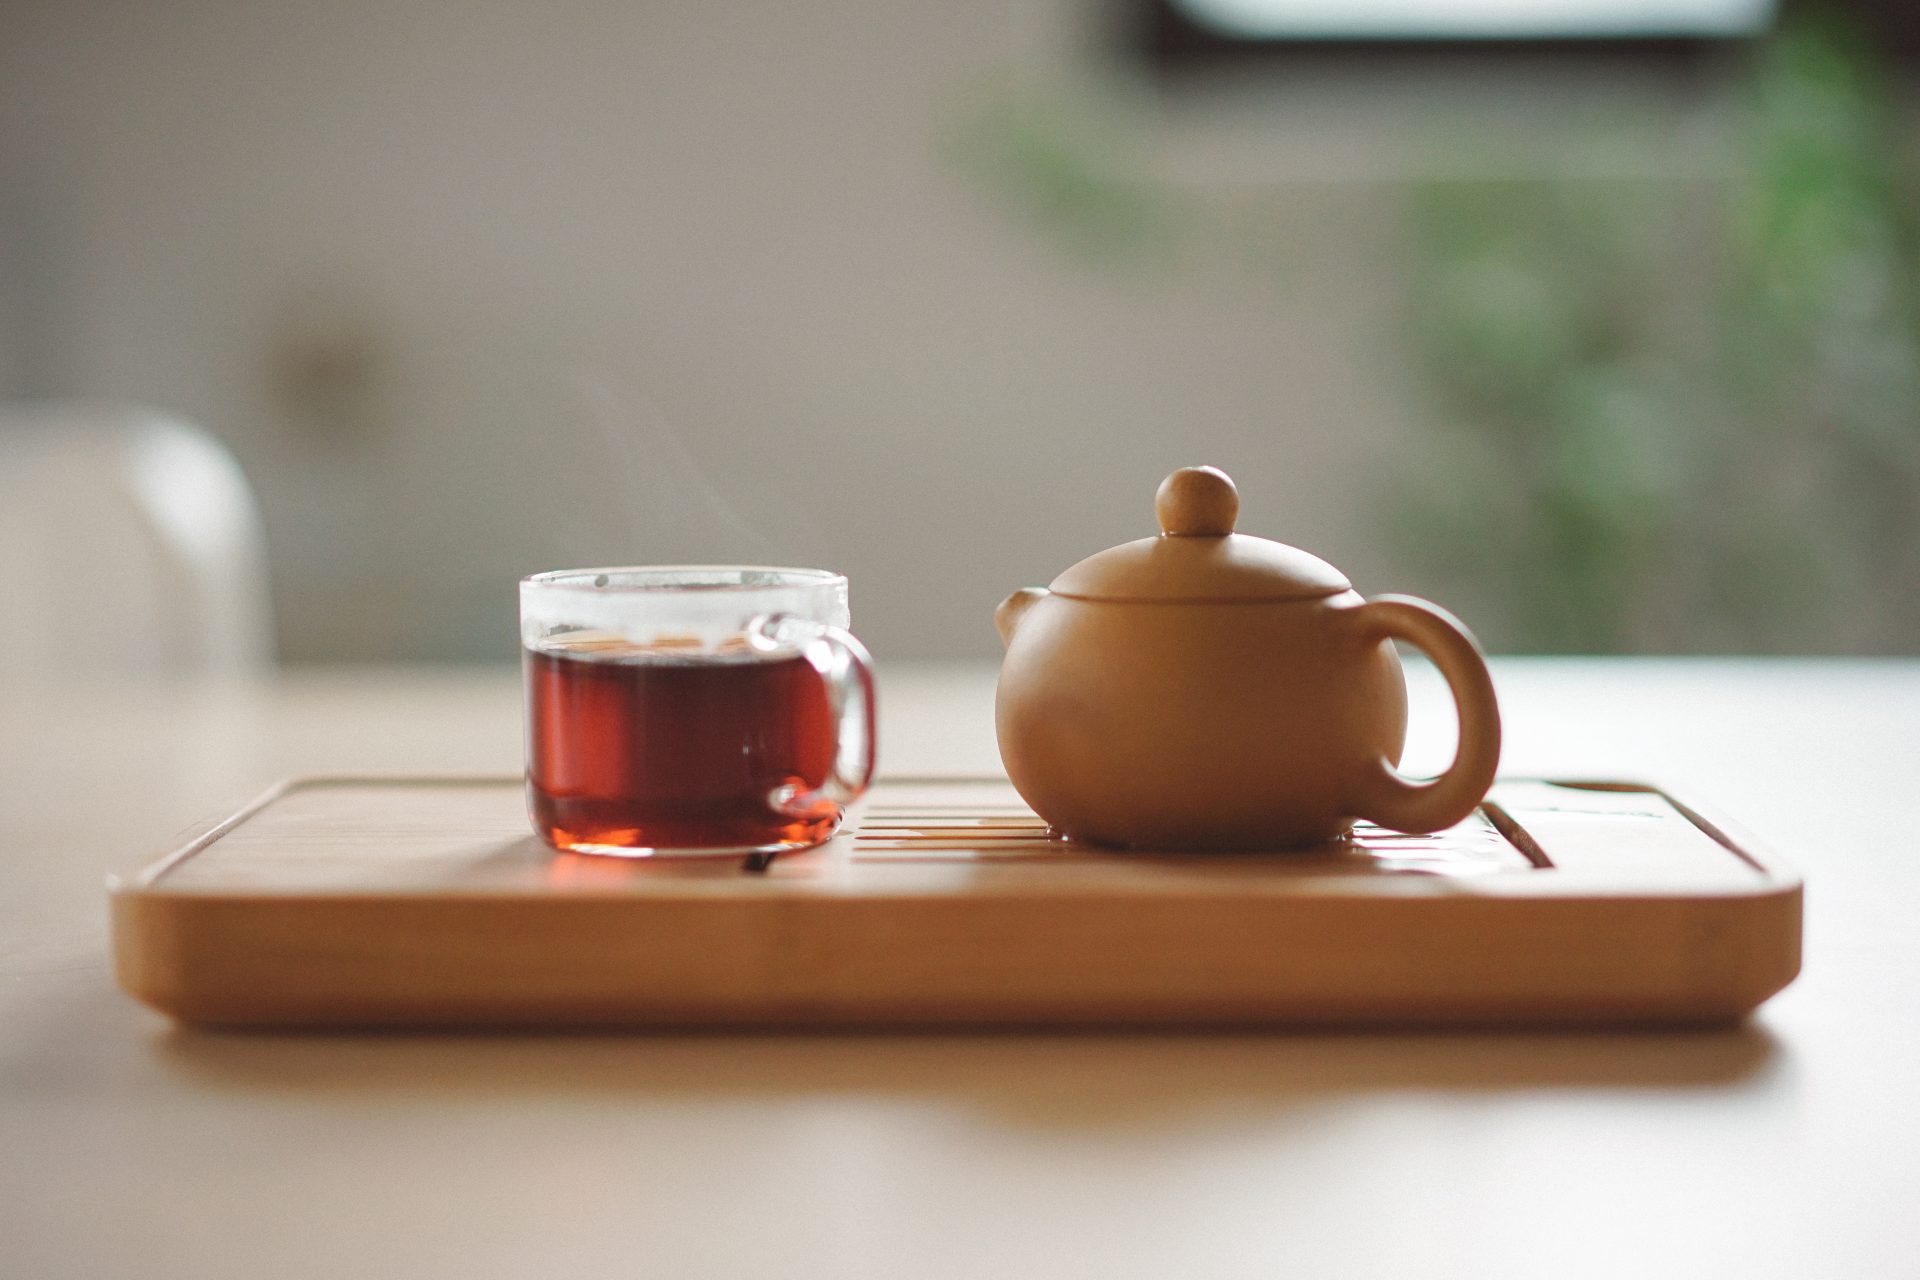 Questions about tea consumption 